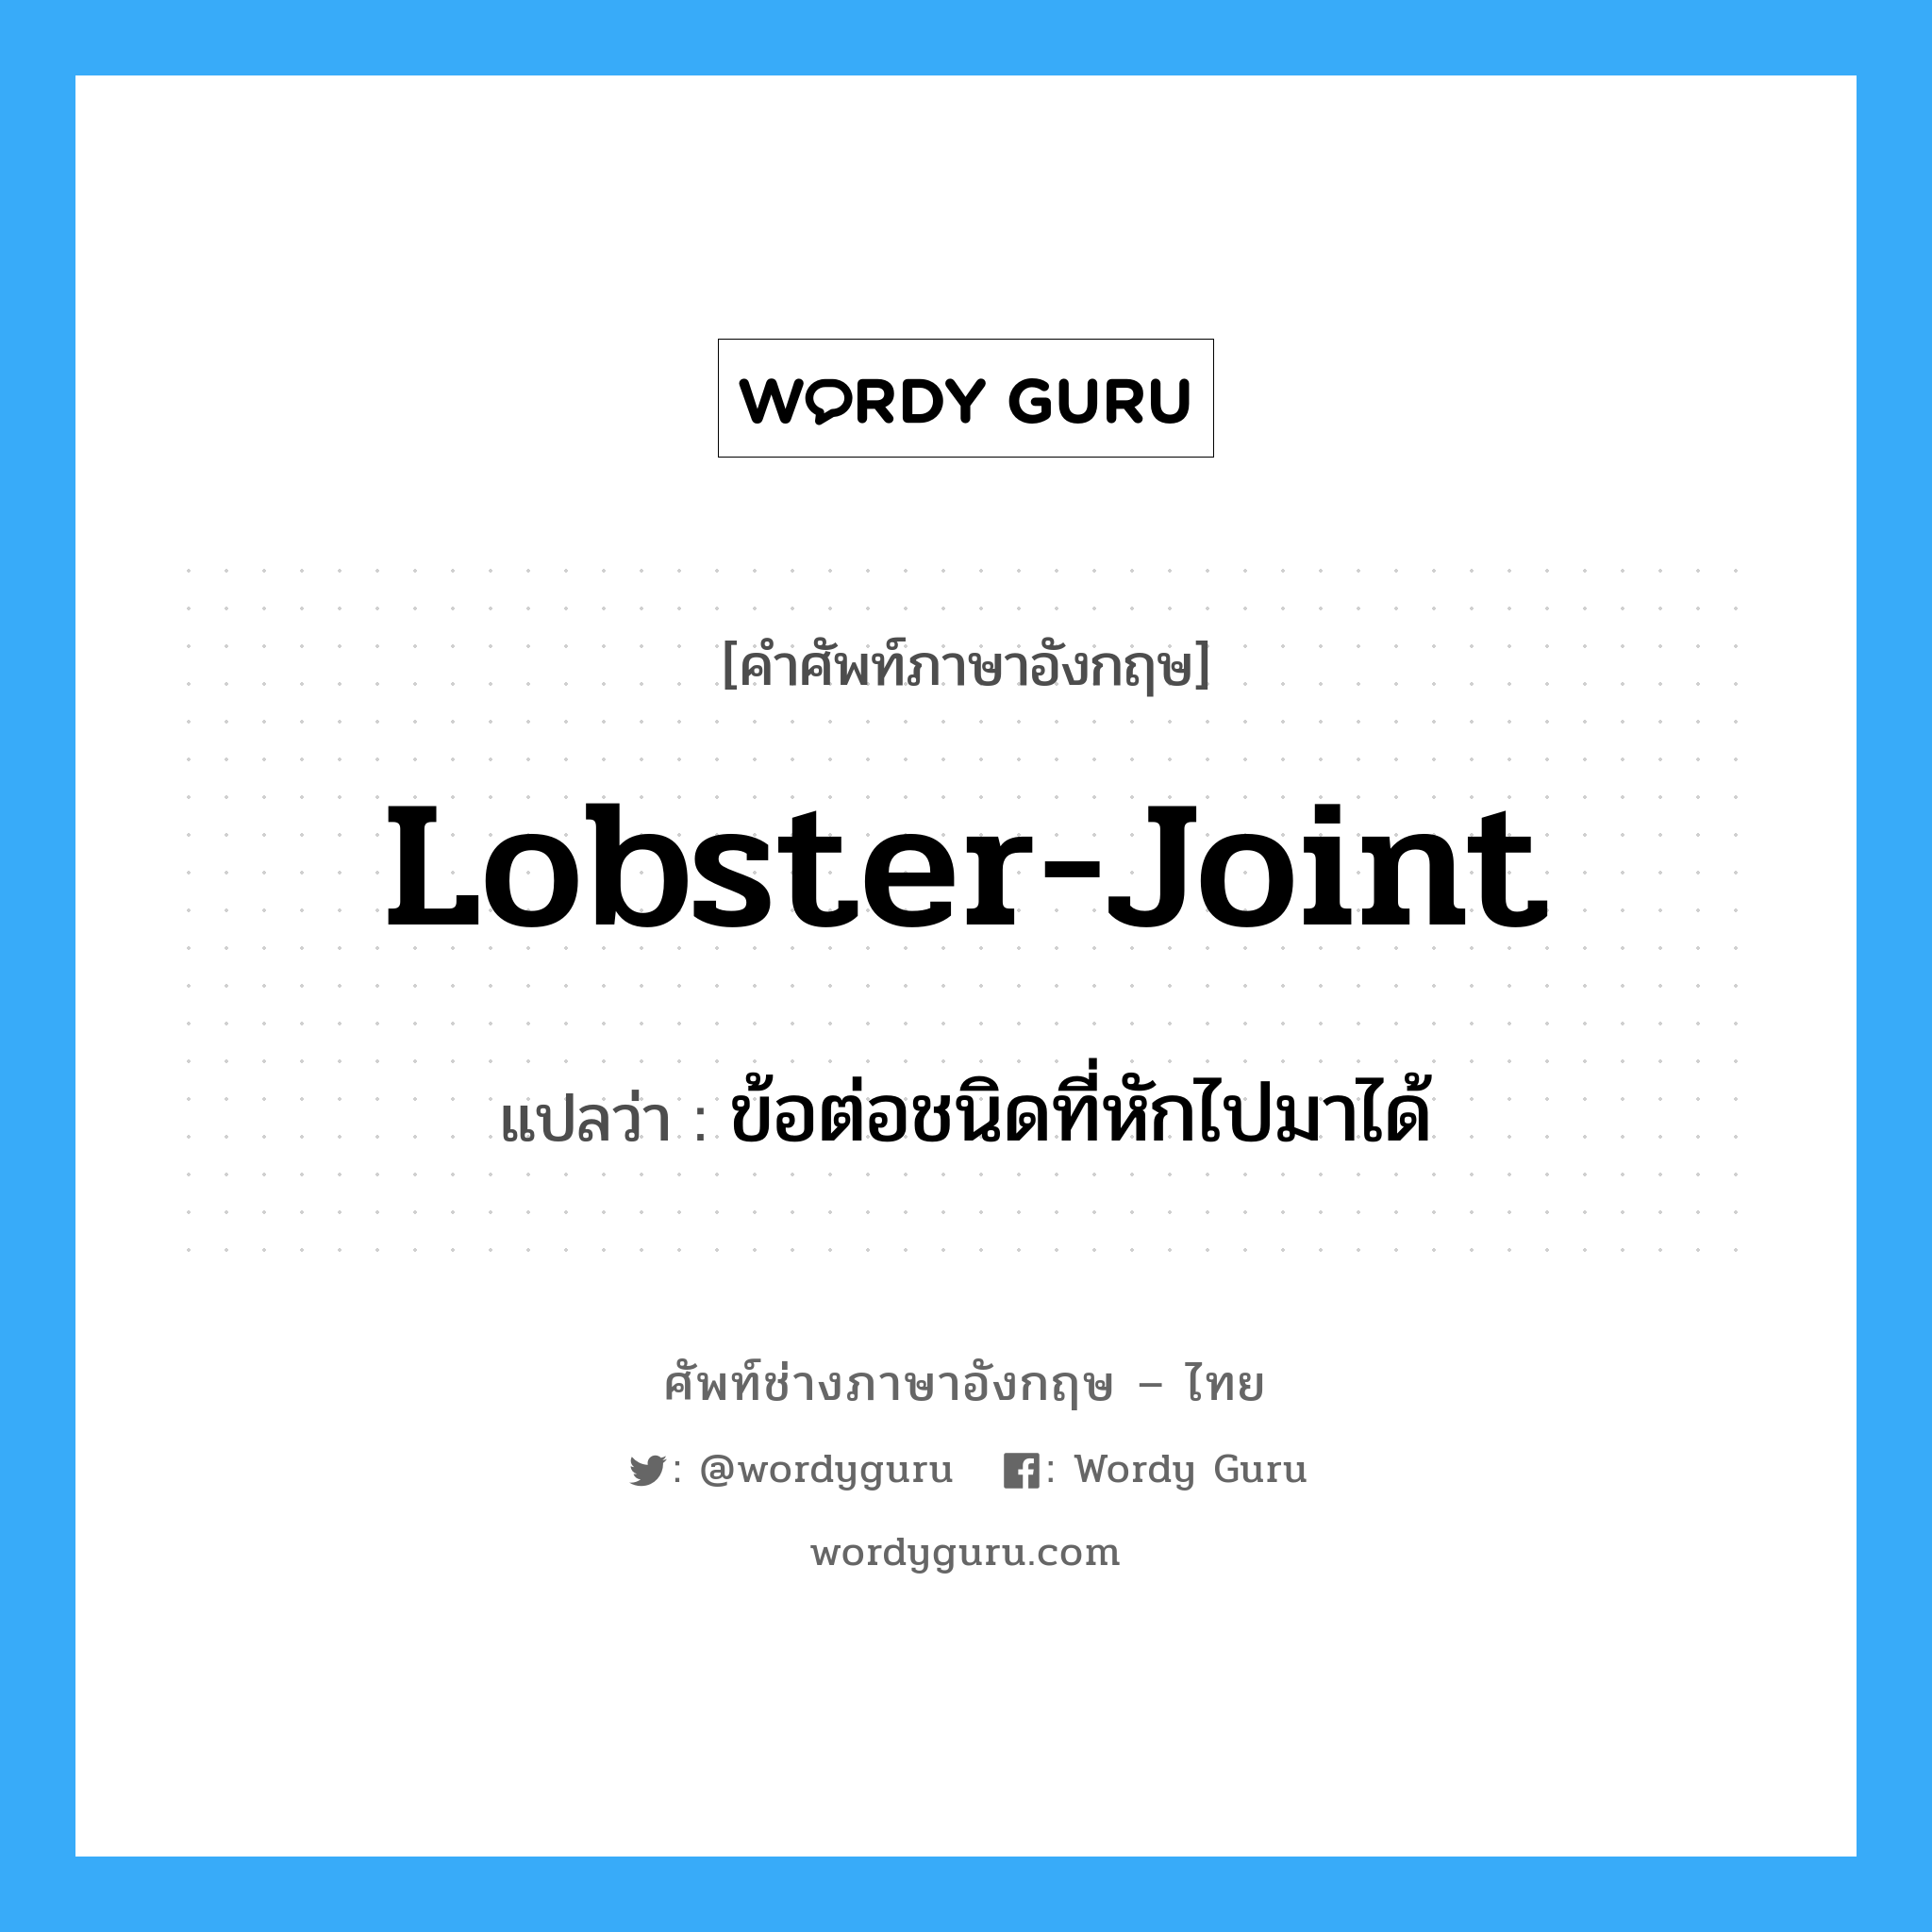 ข้อต่อชนิดที่หักไปมาได้ ภาษาอังกฤษ?, คำศัพท์ช่างภาษาอังกฤษ - ไทย ข้อต่อชนิดที่หักไปมาได้ คำศัพท์ภาษาอังกฤษ ข้อต่อชนิดที่หักไปมาได้ แปลว่า lobster-joint